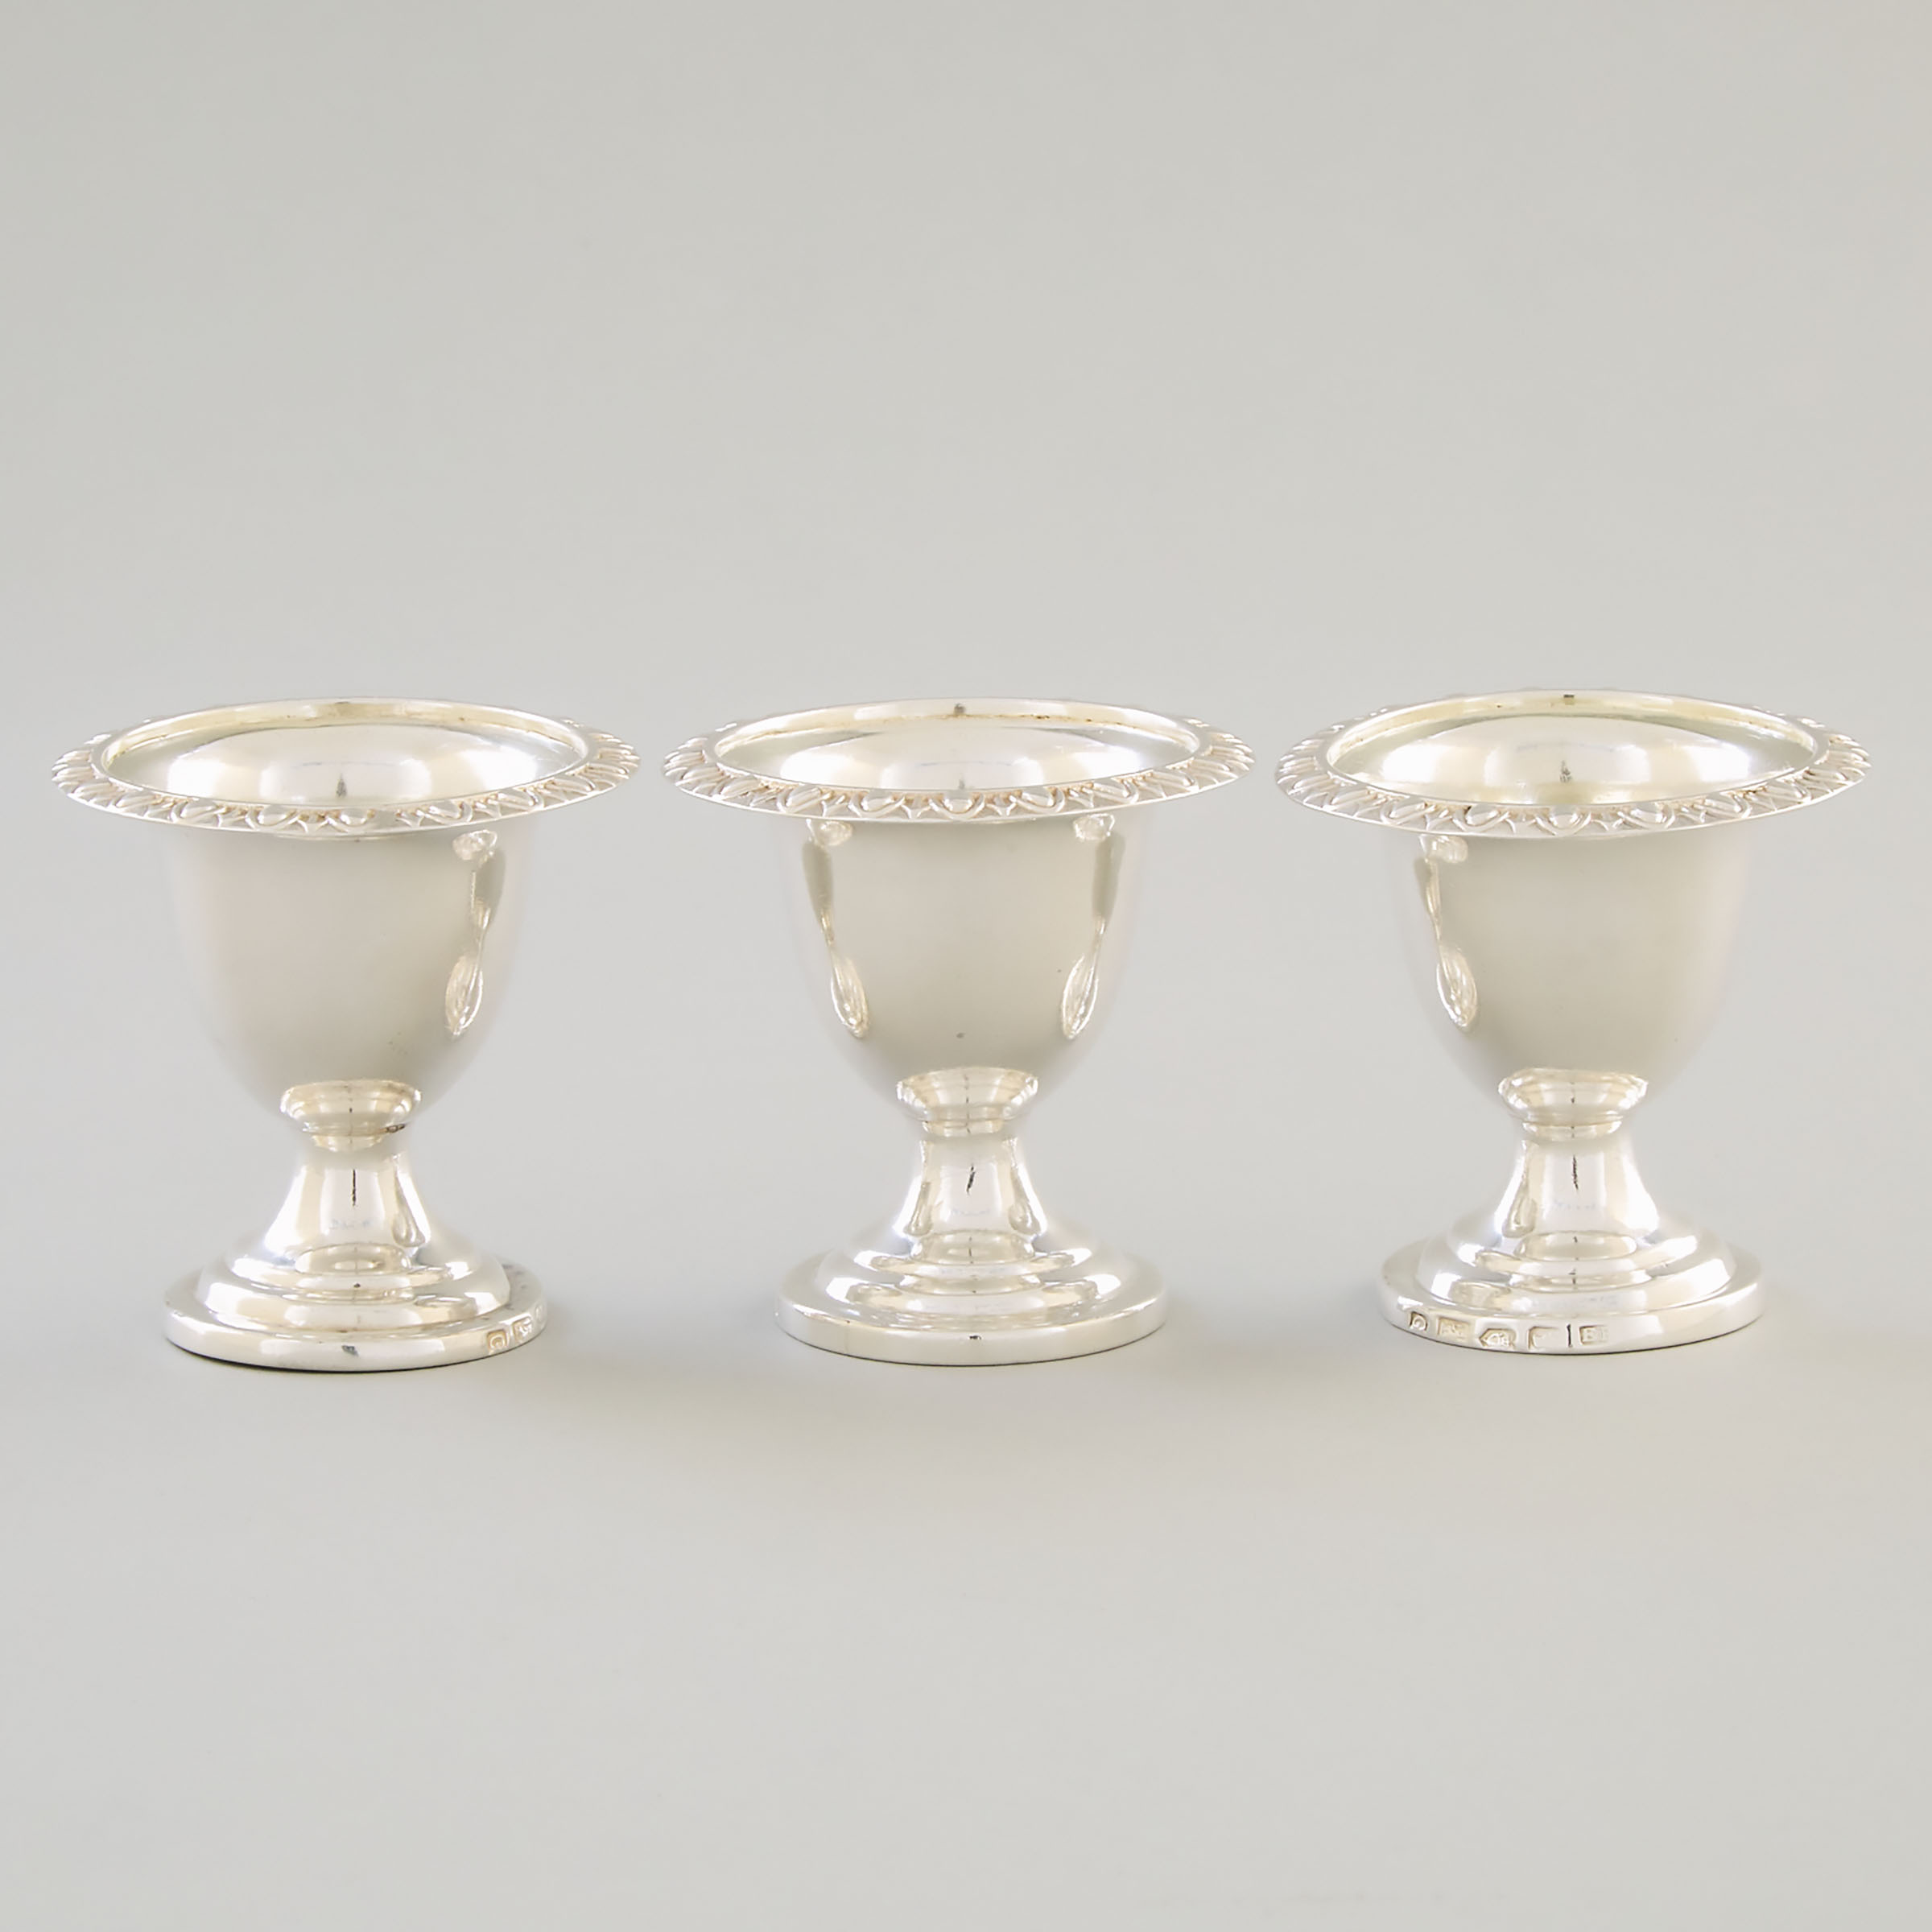 Three George IV Irish Silver Egg Cups, Edward Power, Dublin, 1827